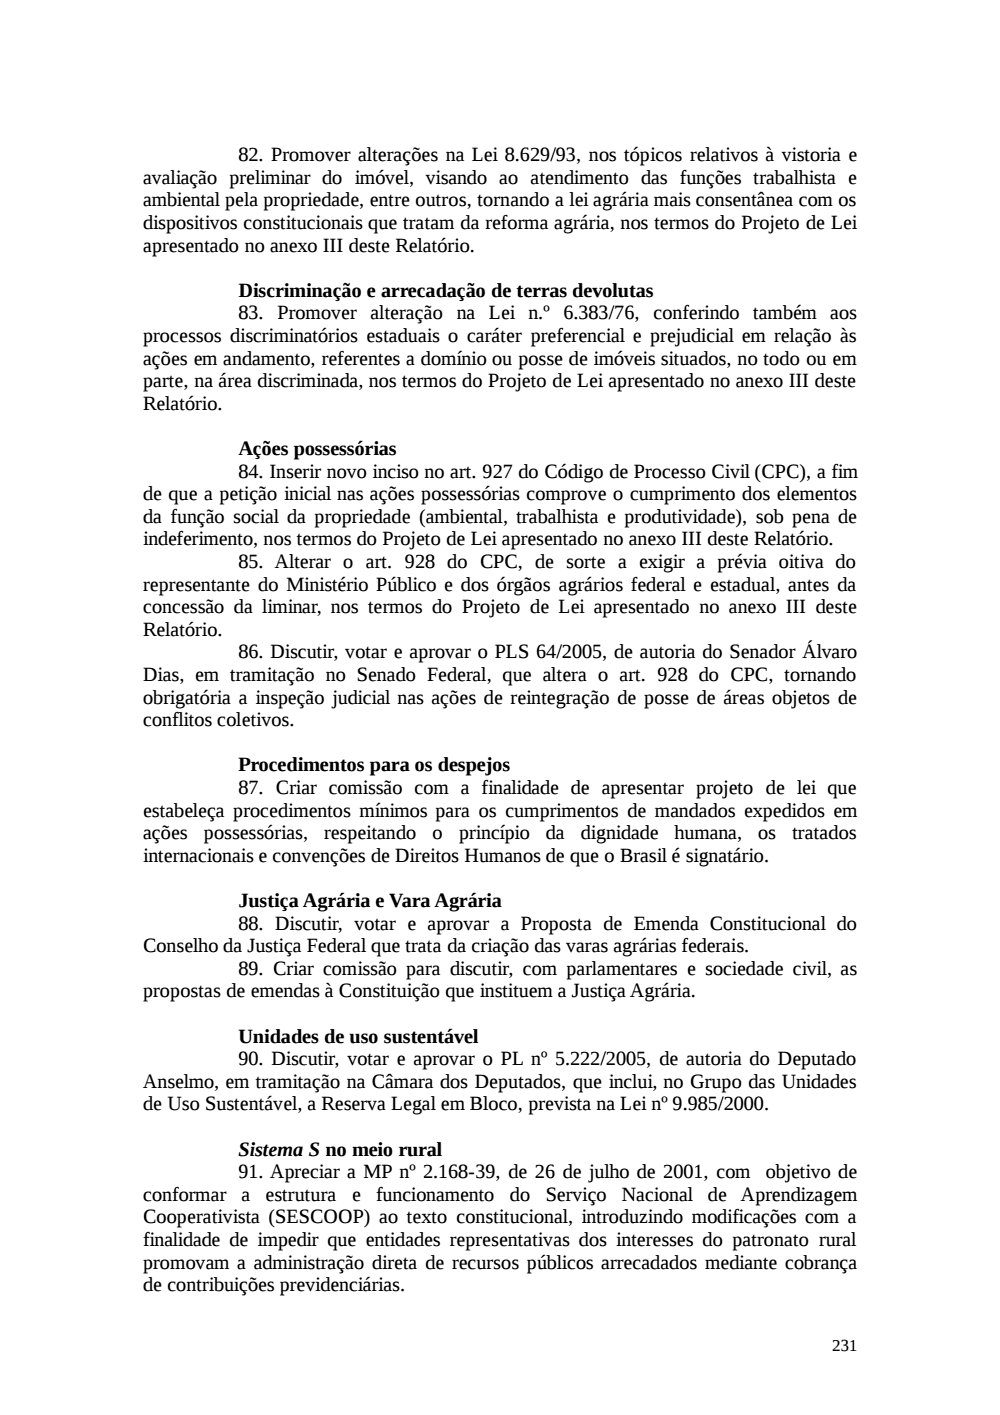 Page 231 from Relatório final da comissão